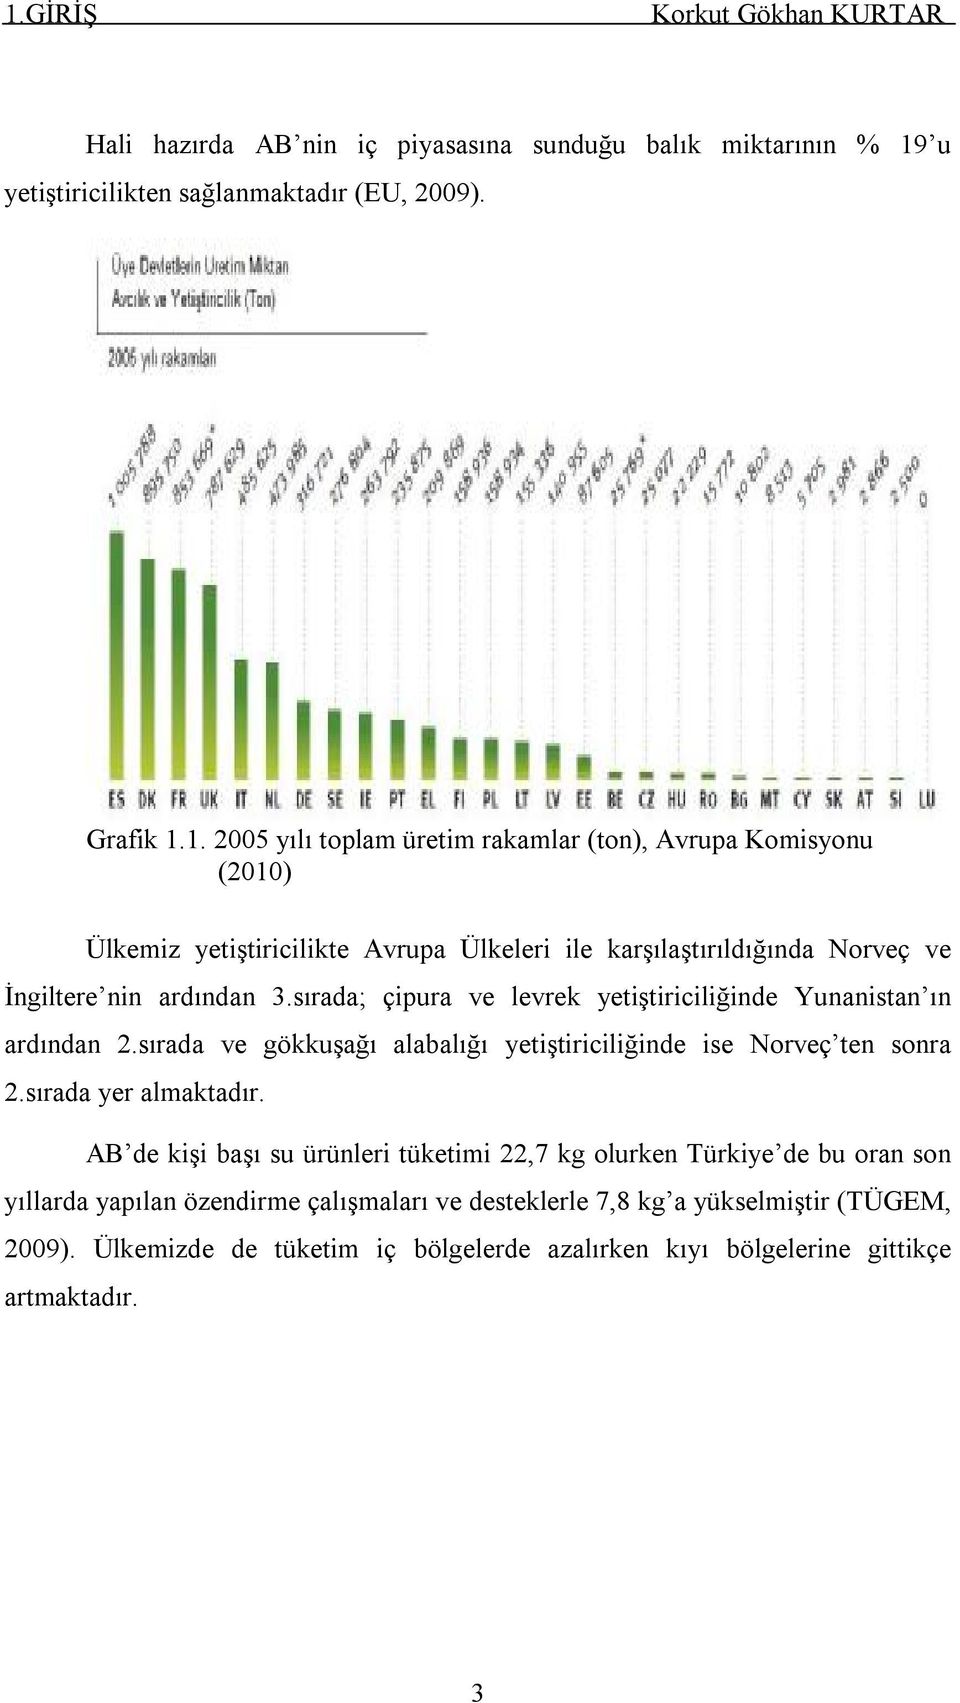 AB de kişi başı su ürünleri tüketimi 22,7 kg olurken Türkiye de bu oran son yıllarda yapılan özendirme çalışmaları ve desteklerle 7,8 kg a yükselmiştir (TÜGEM, 2009).